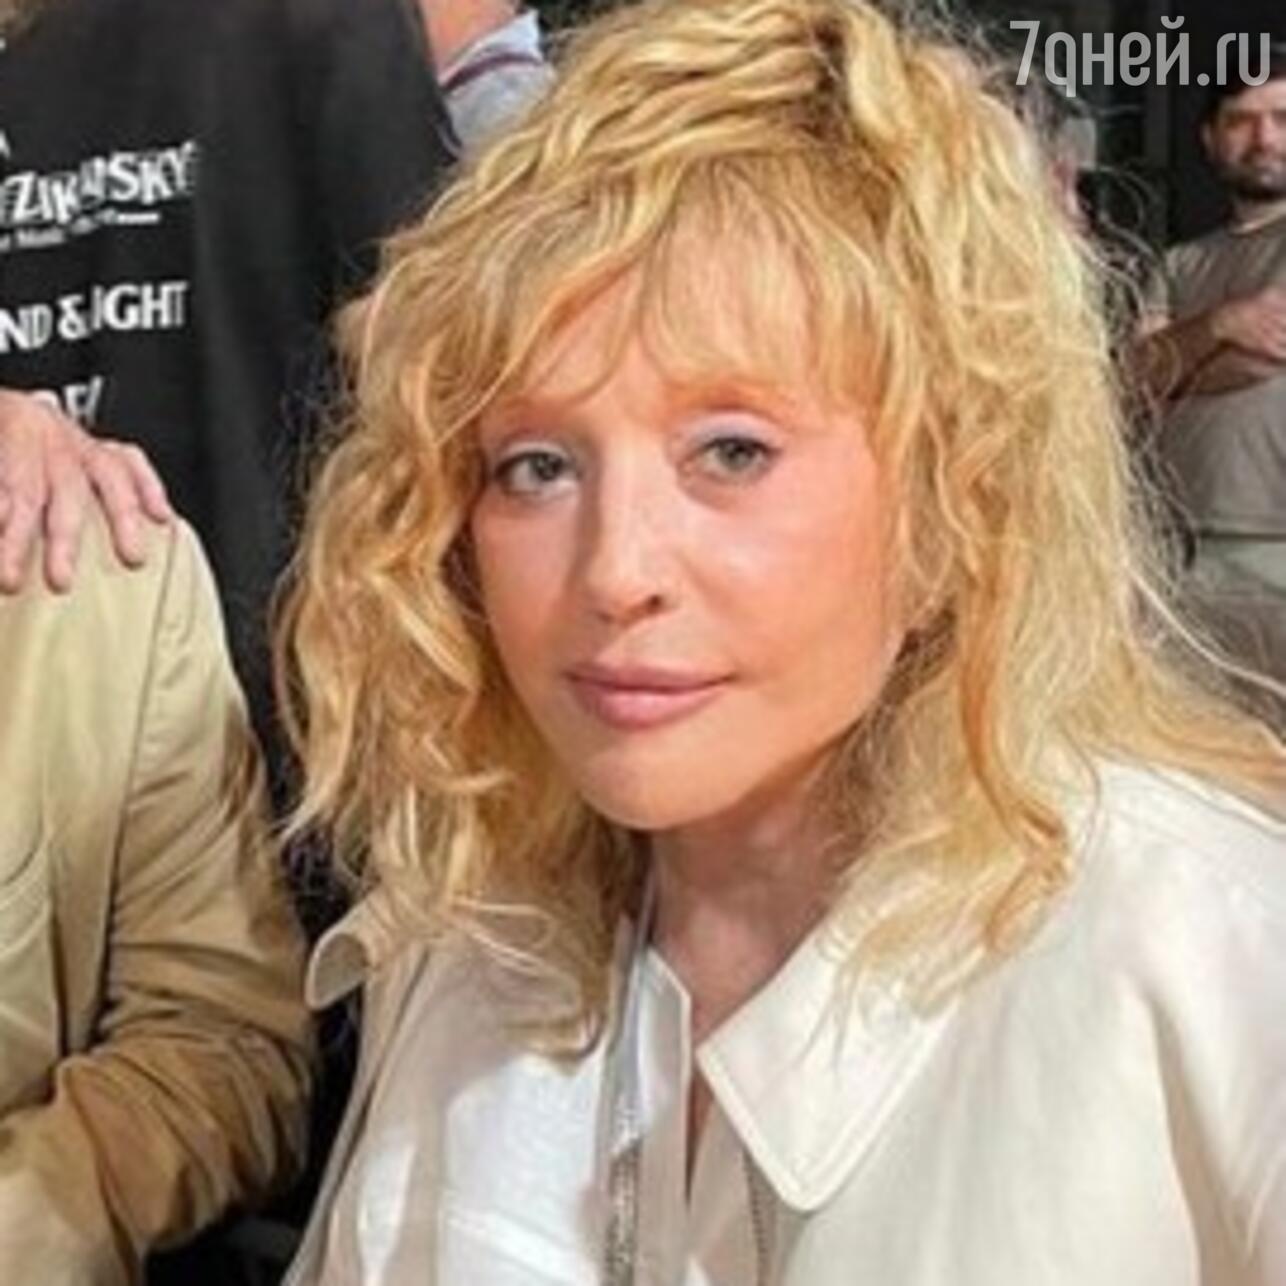 После пластики? Пугачева показала «новое» лицо на вечеринке в Израиле -  7Дней.ру